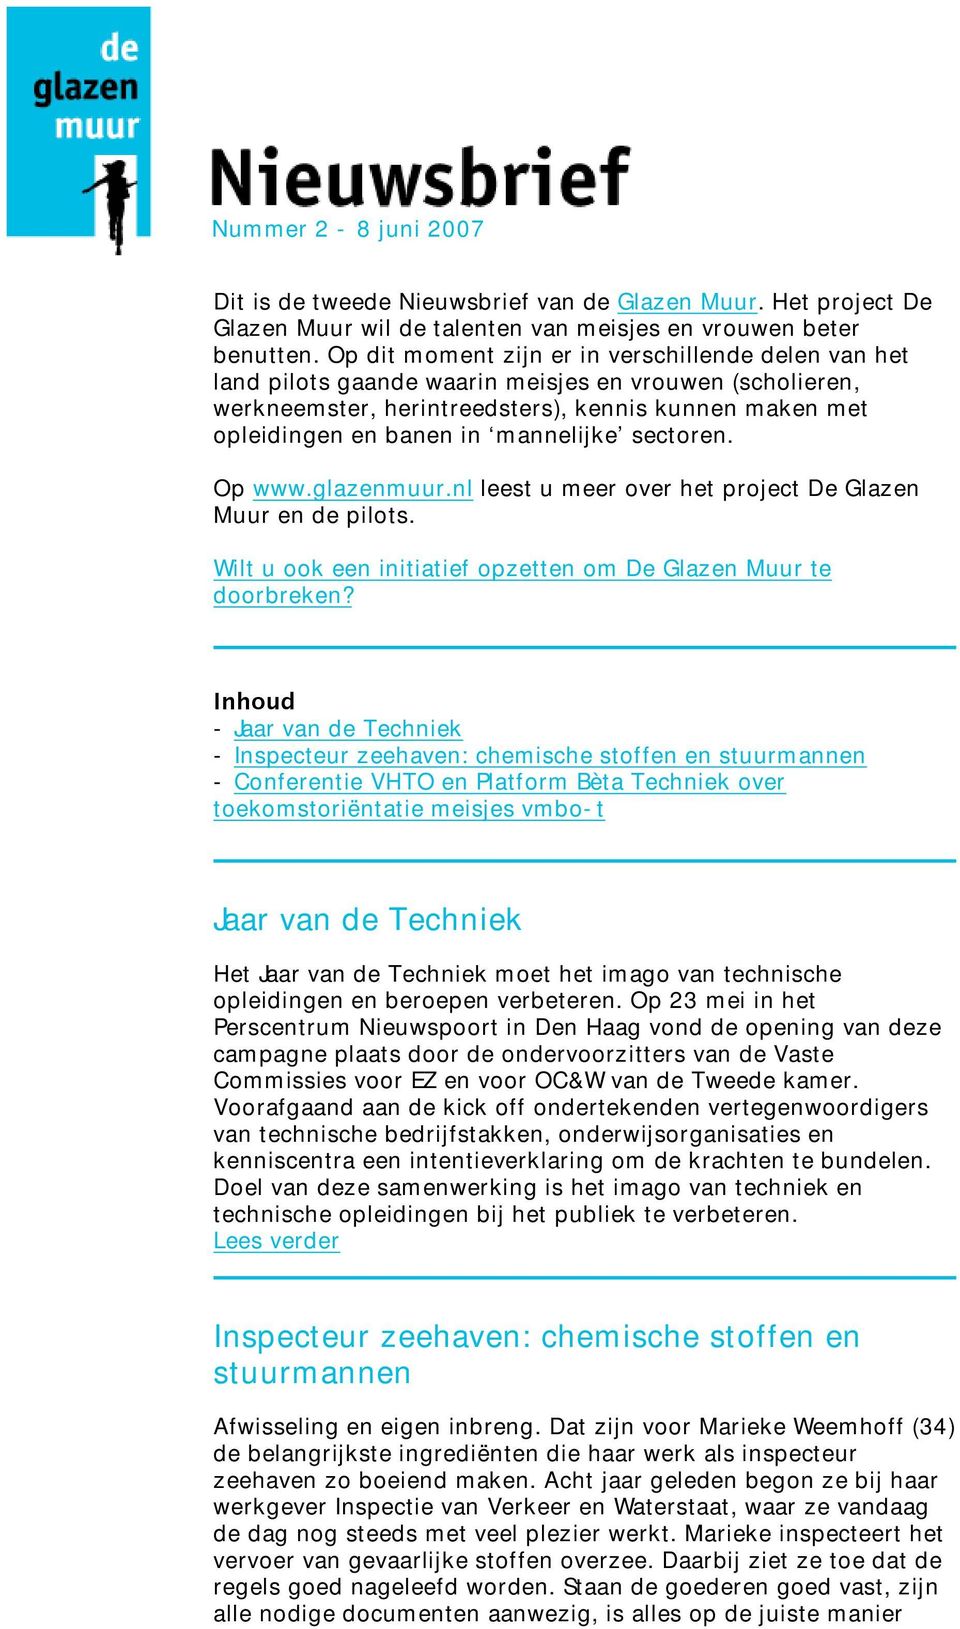 mannelijke sectoren. Op www.glazenmuur.nl leest u meer over het project De Glazen Muur en de pilots. Wilt u ook een initiatief opzetten om De Glazen Muur te doorbreken?